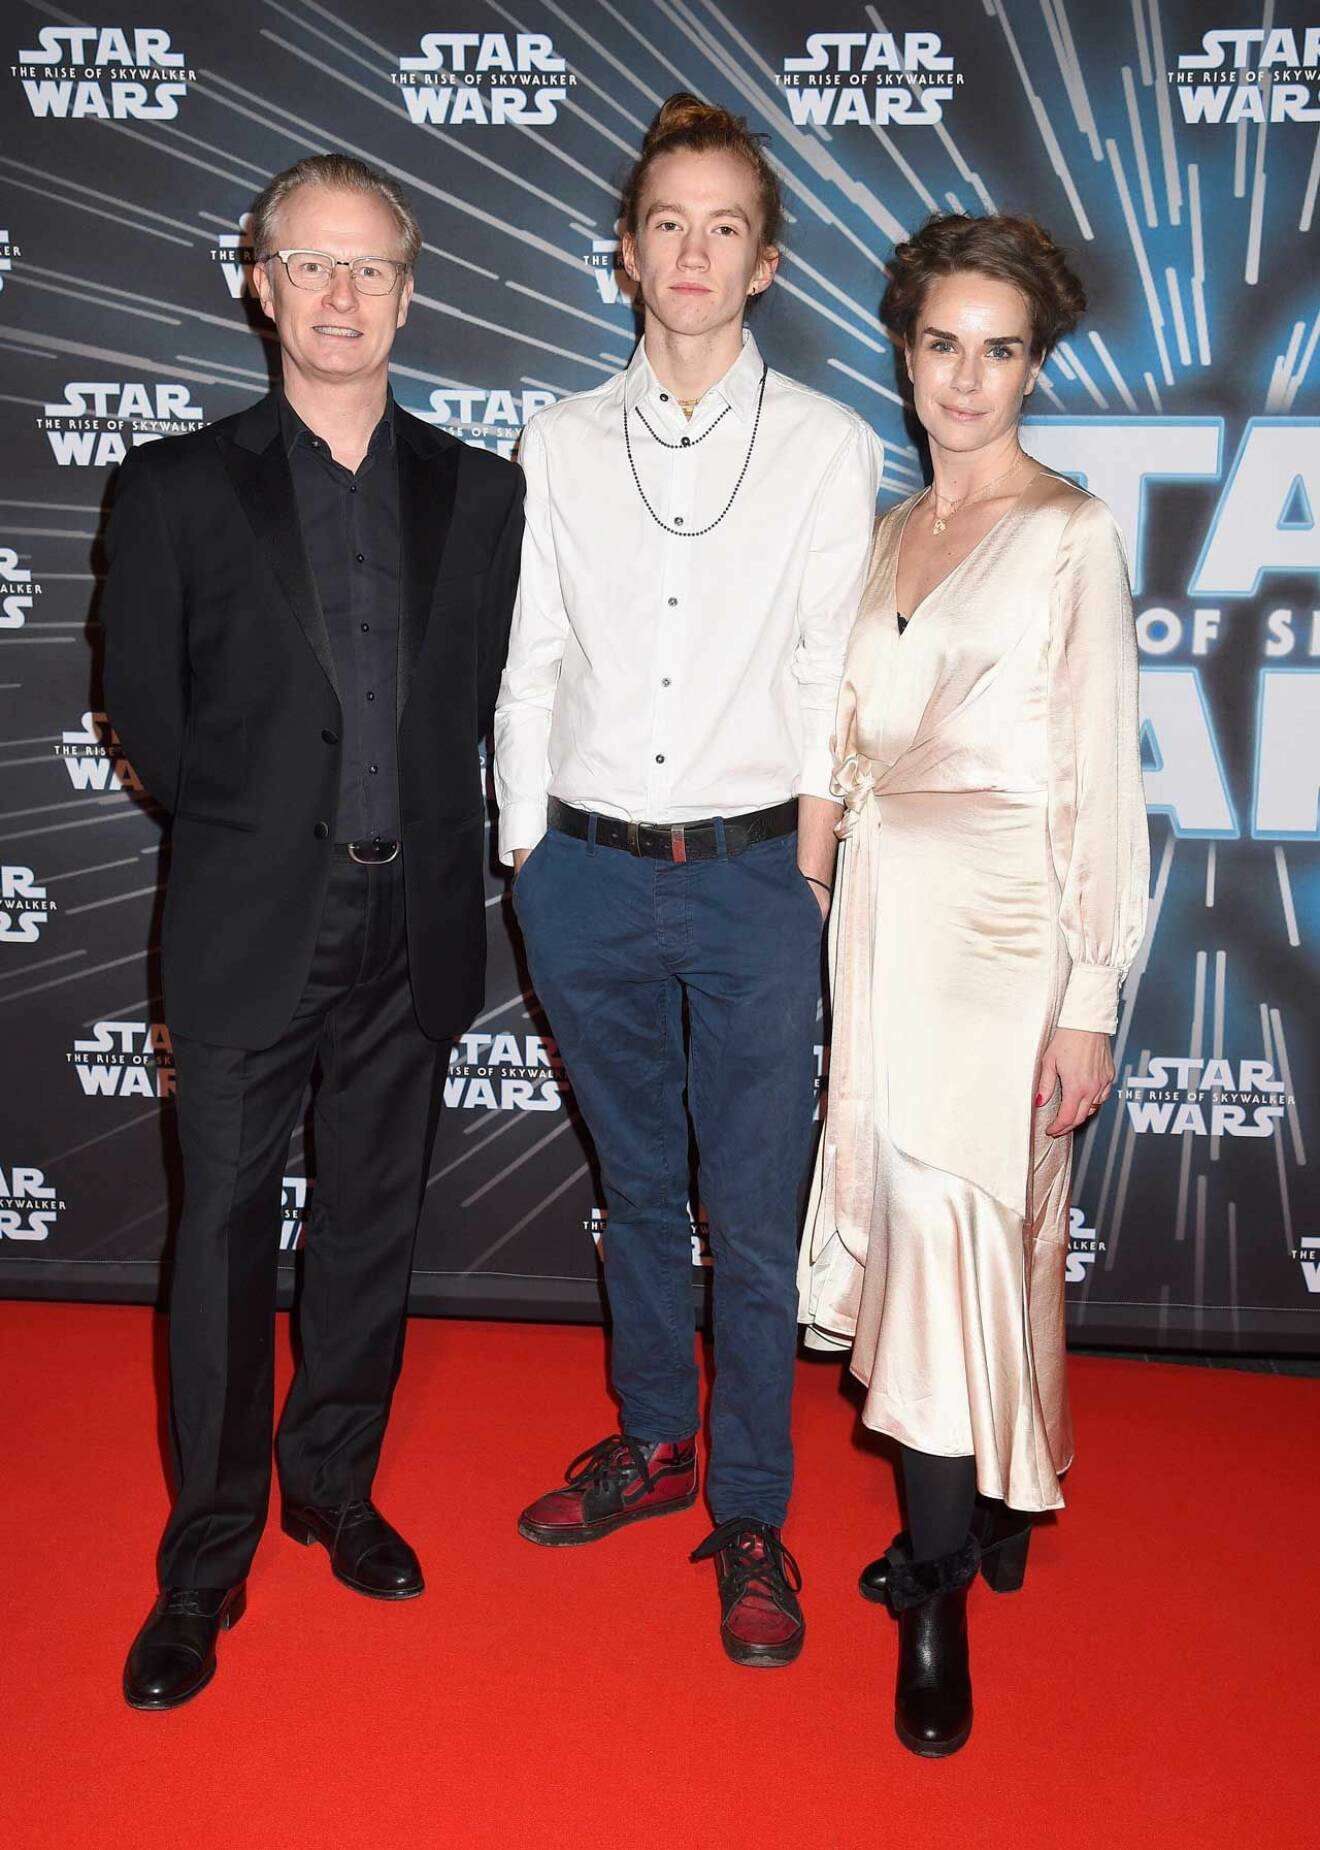 Skådespelerskan Lina Englund var prinsessan Leia-lookalike tillsammans med Sven Ahlström och sonen Elliot.